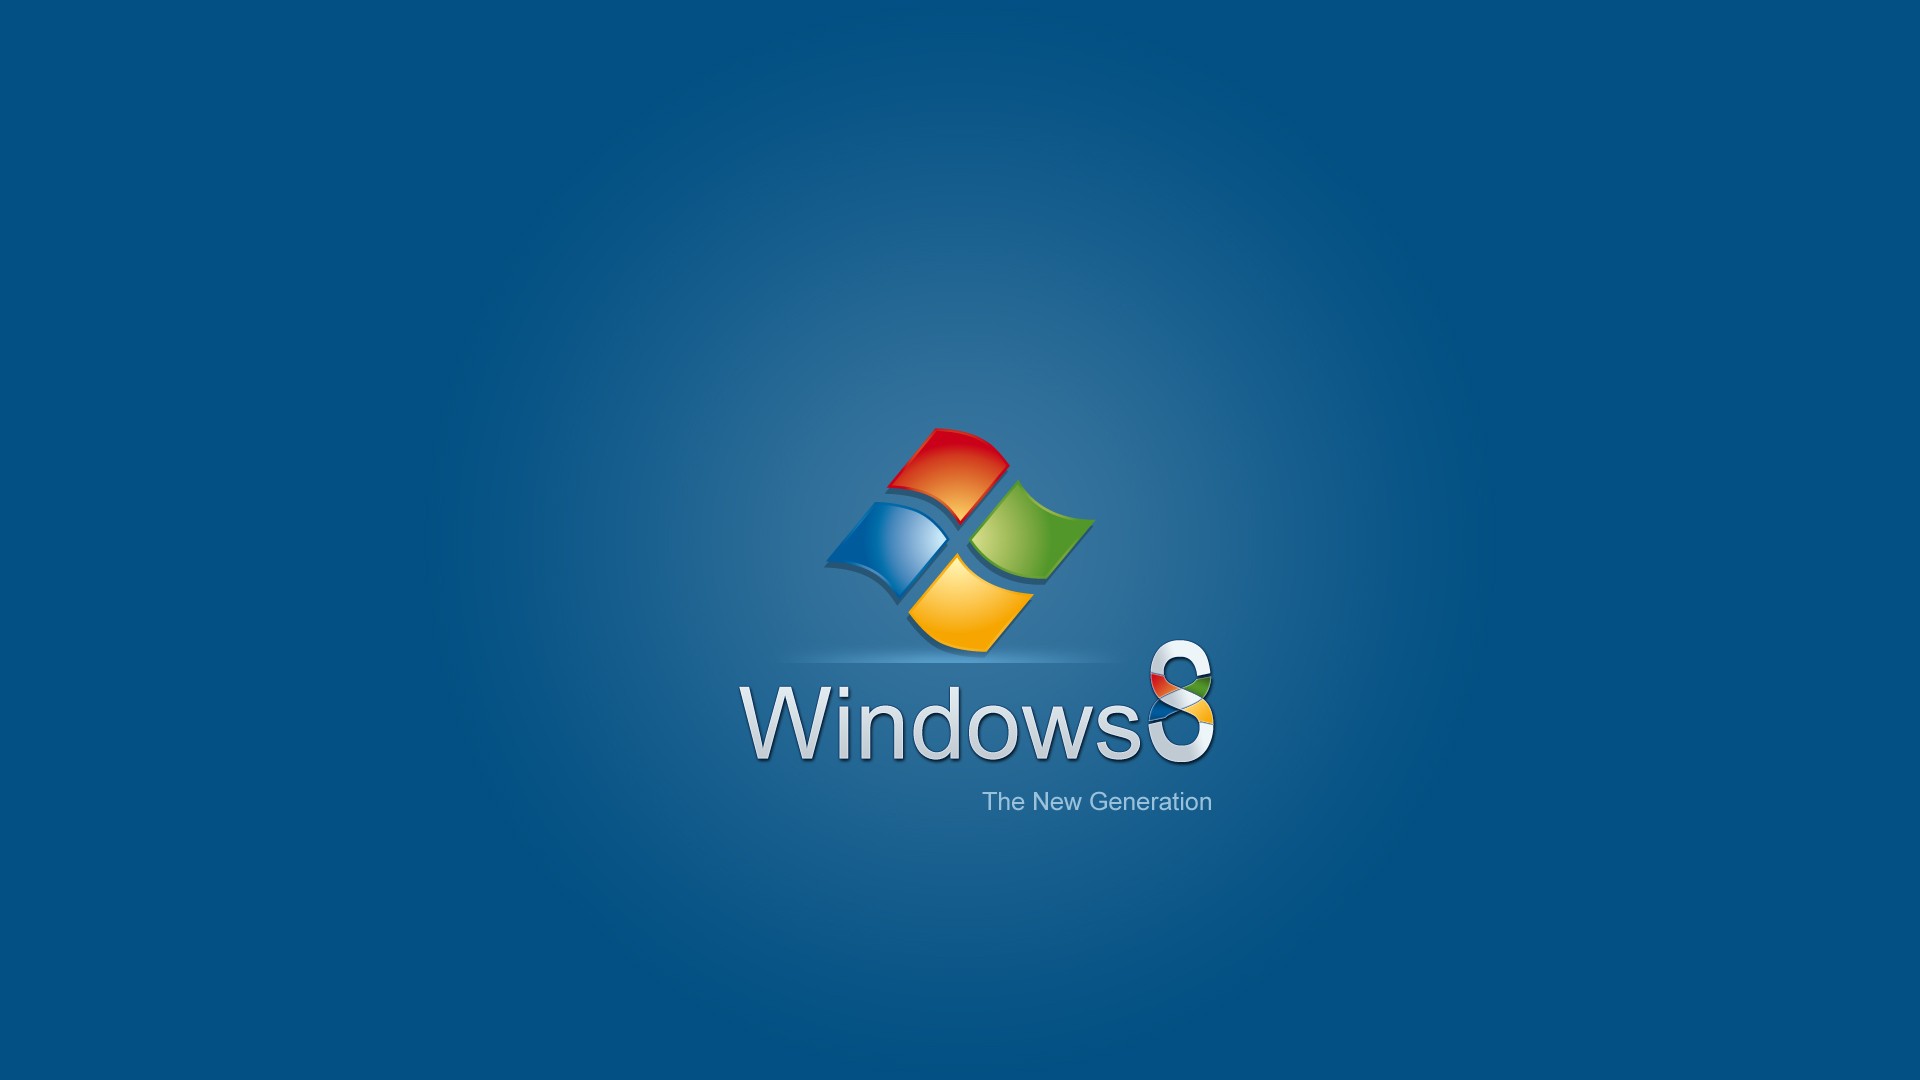 [49+] Windows Me Wallpaper - WallpaperSafari